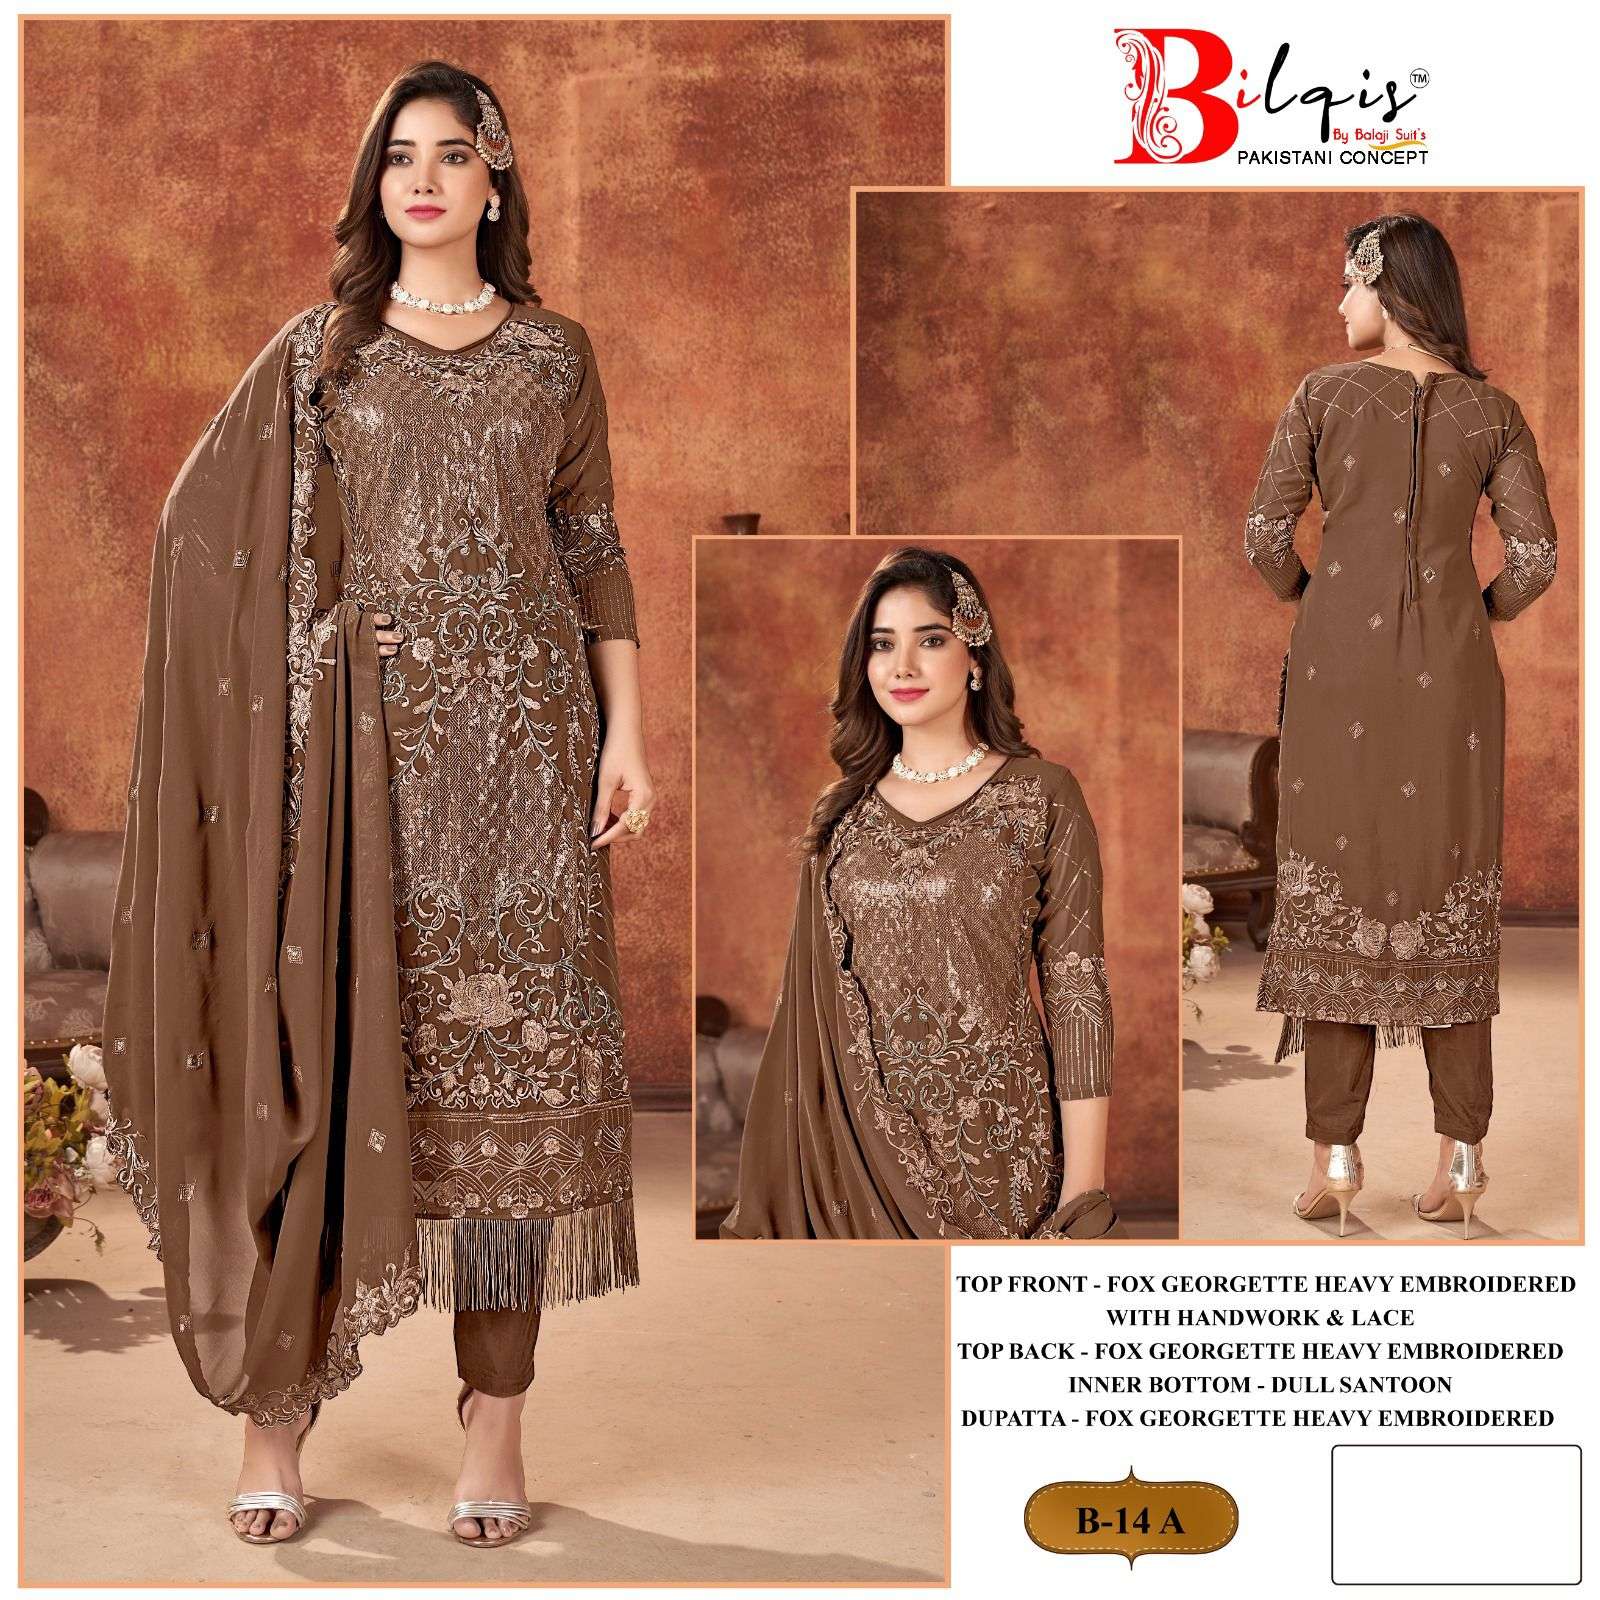 Bilqis B 14 Faux Georgette Pakistani Suits Wholesale catalog